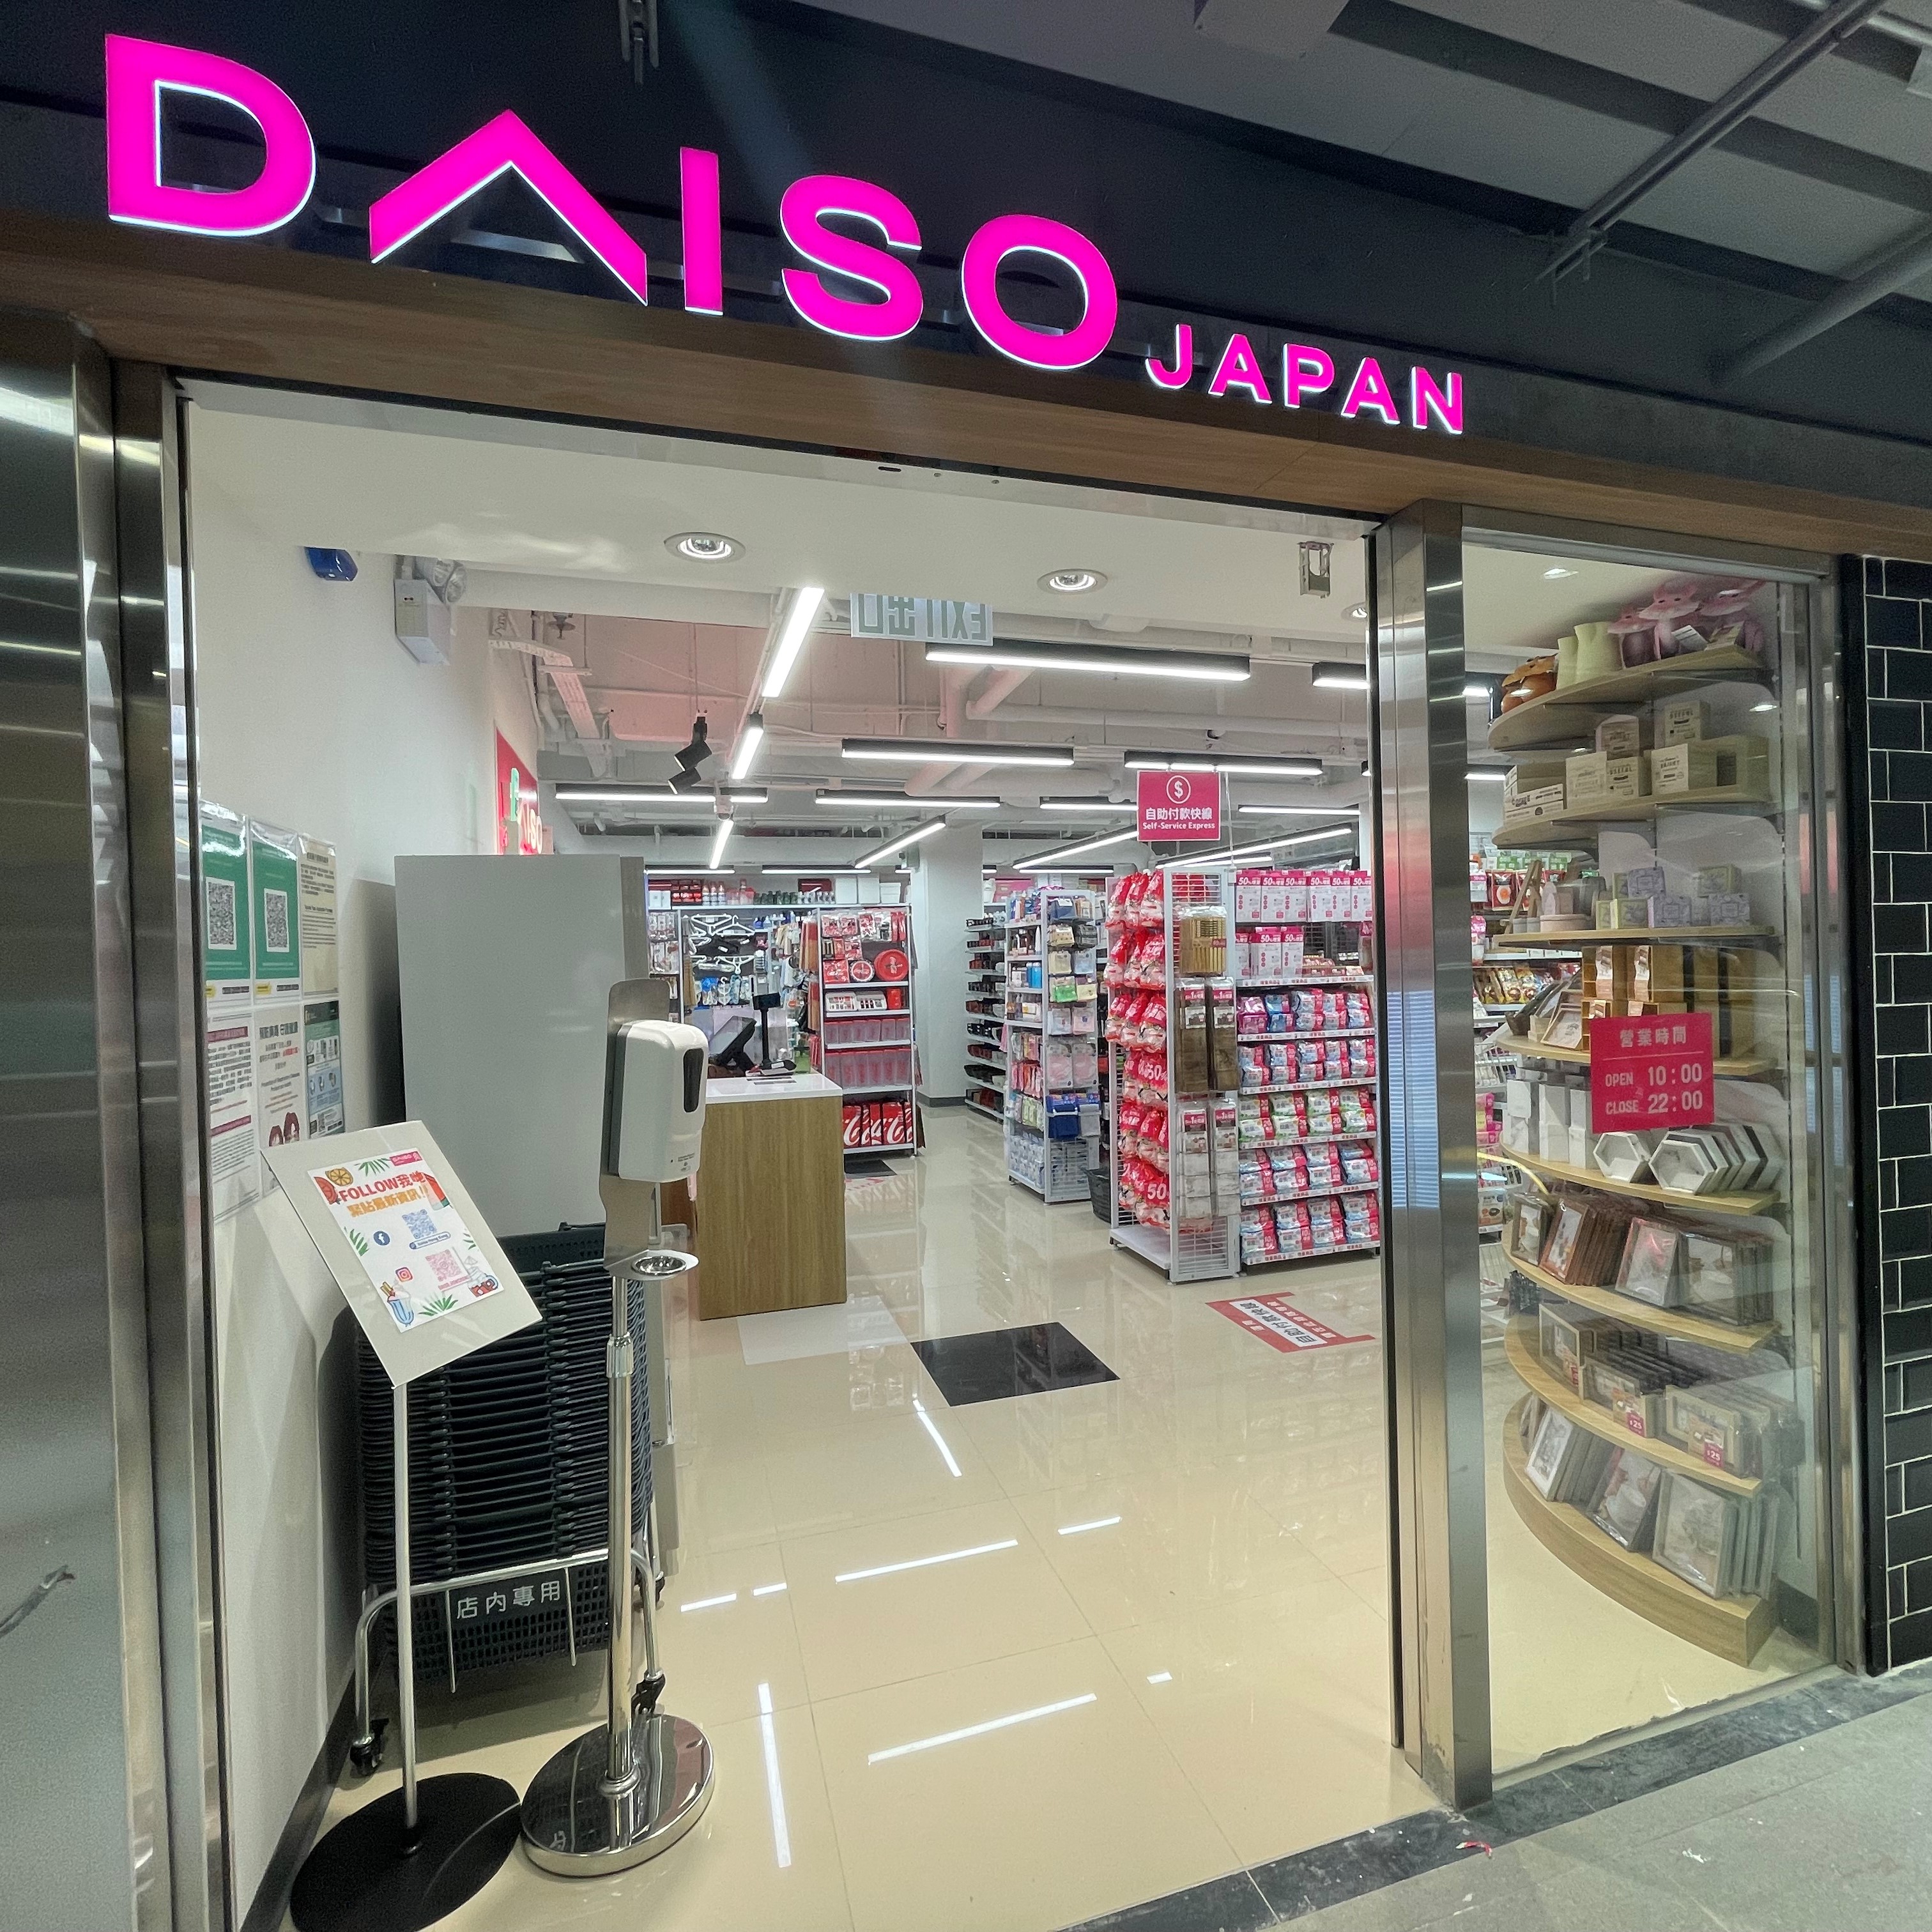 Daiso Japan 利東店